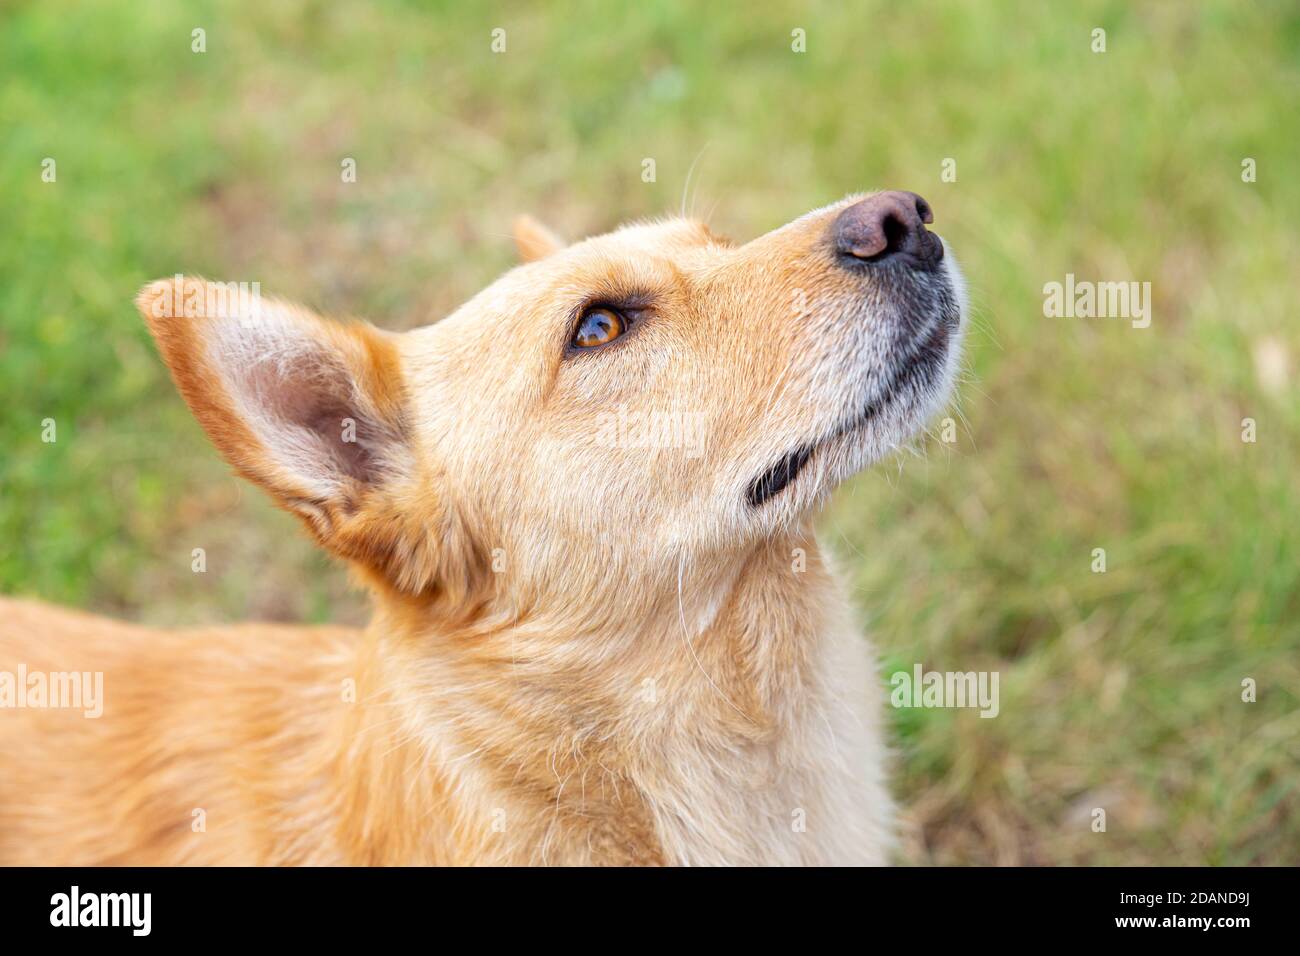 Nahaufnahme Porträt eines schönen orange Hund auf einem Hintergrund von grünem Gras. Der große Hund schaut nach oben. Wandern mit dem Hund an der frischen Luft. Hingabe, Freund Stockfoto